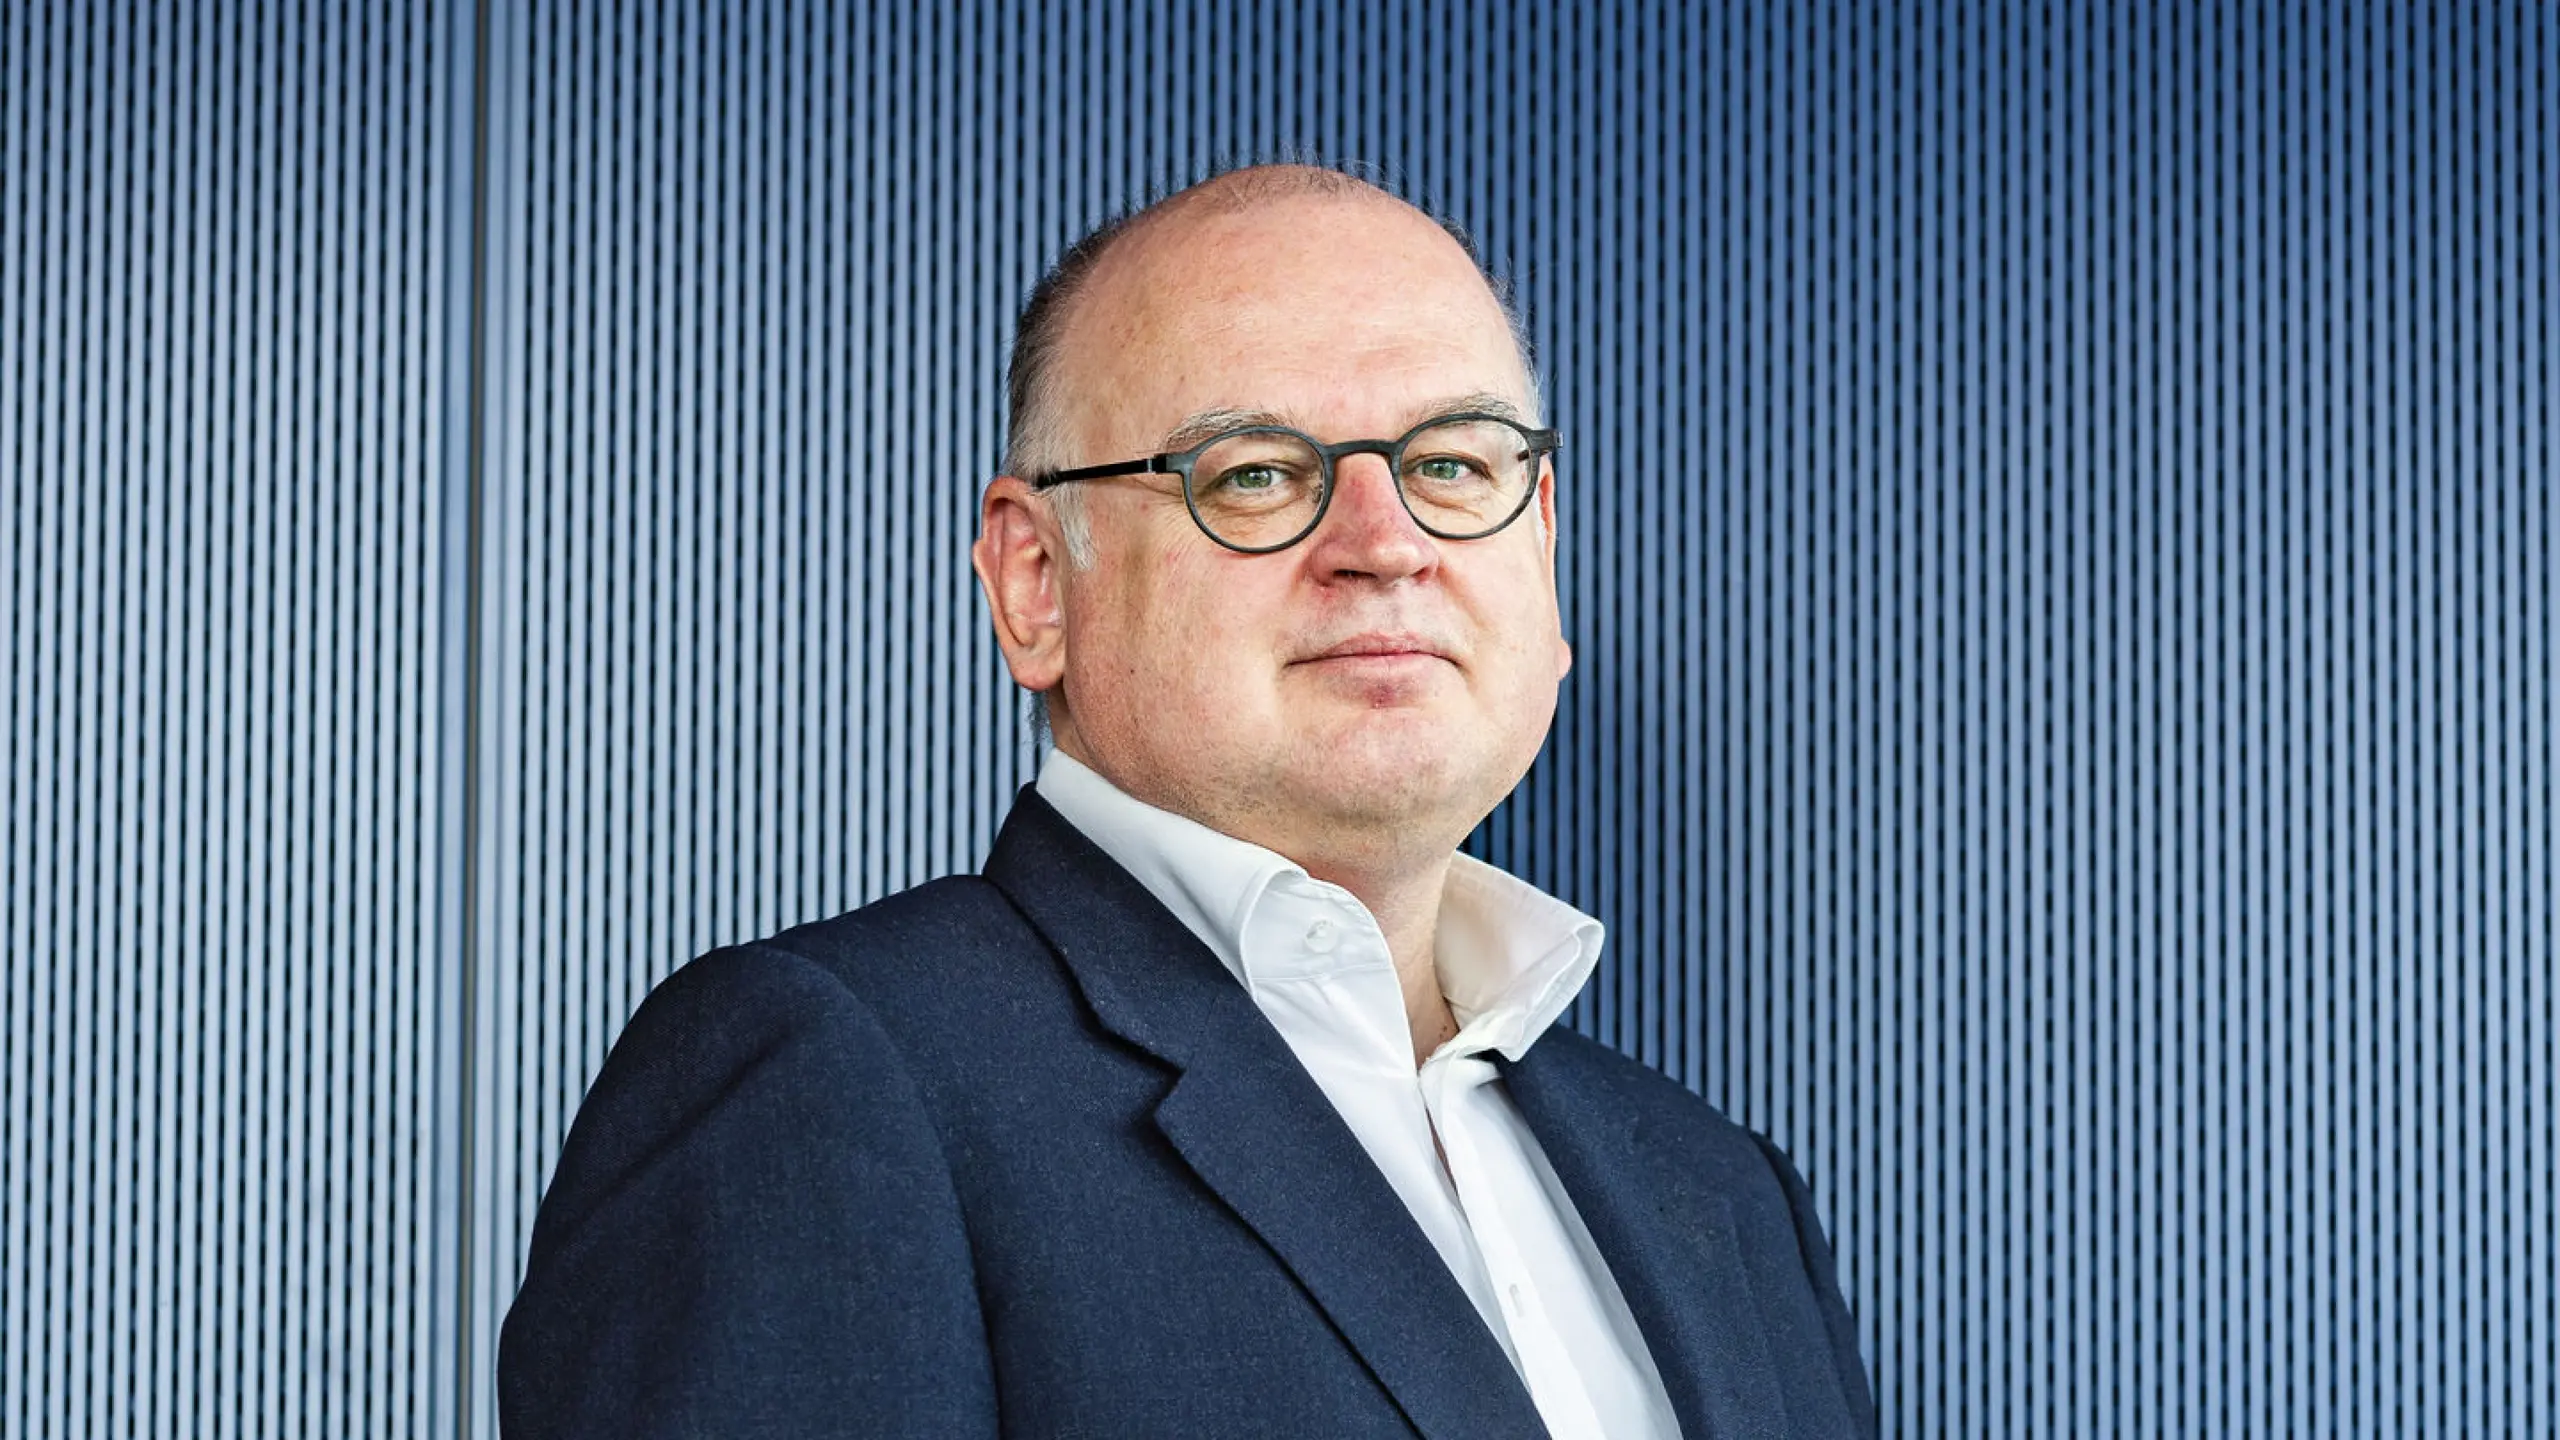 Erste Group CEO Bernhard Spalt